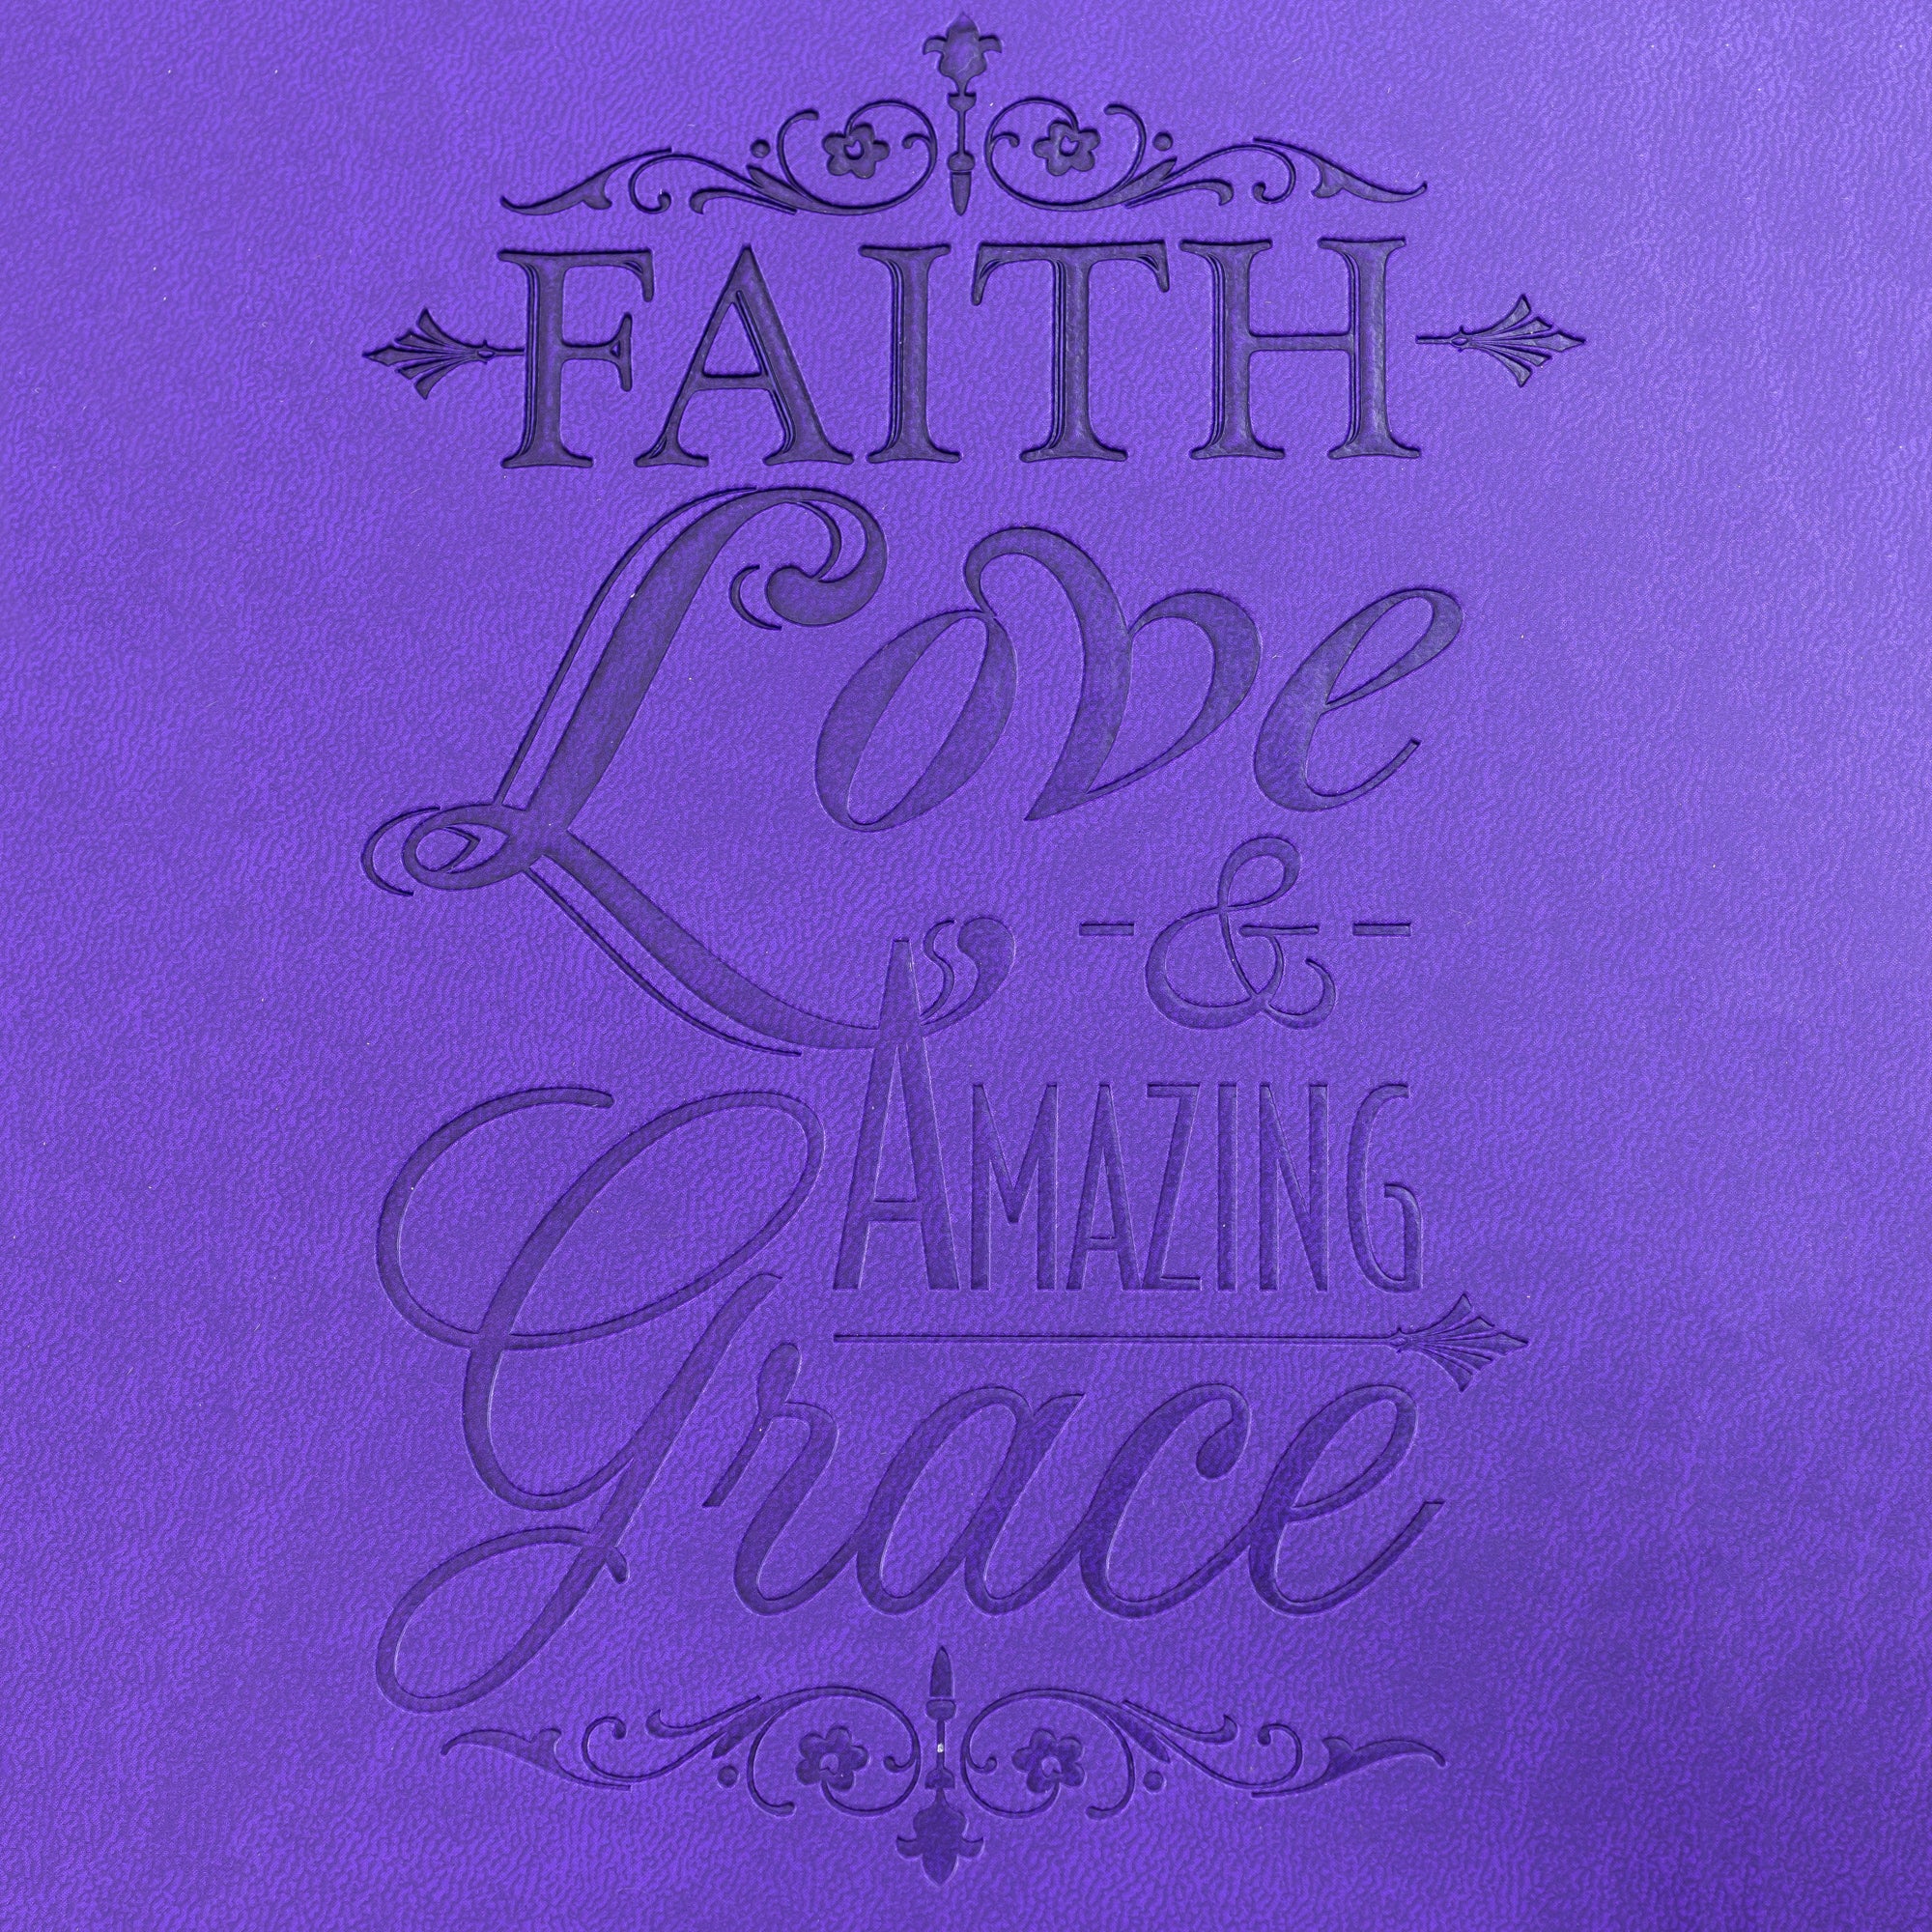 Faux Leather Journal : Purple Faith Love & Amazing Grace, Key Charm